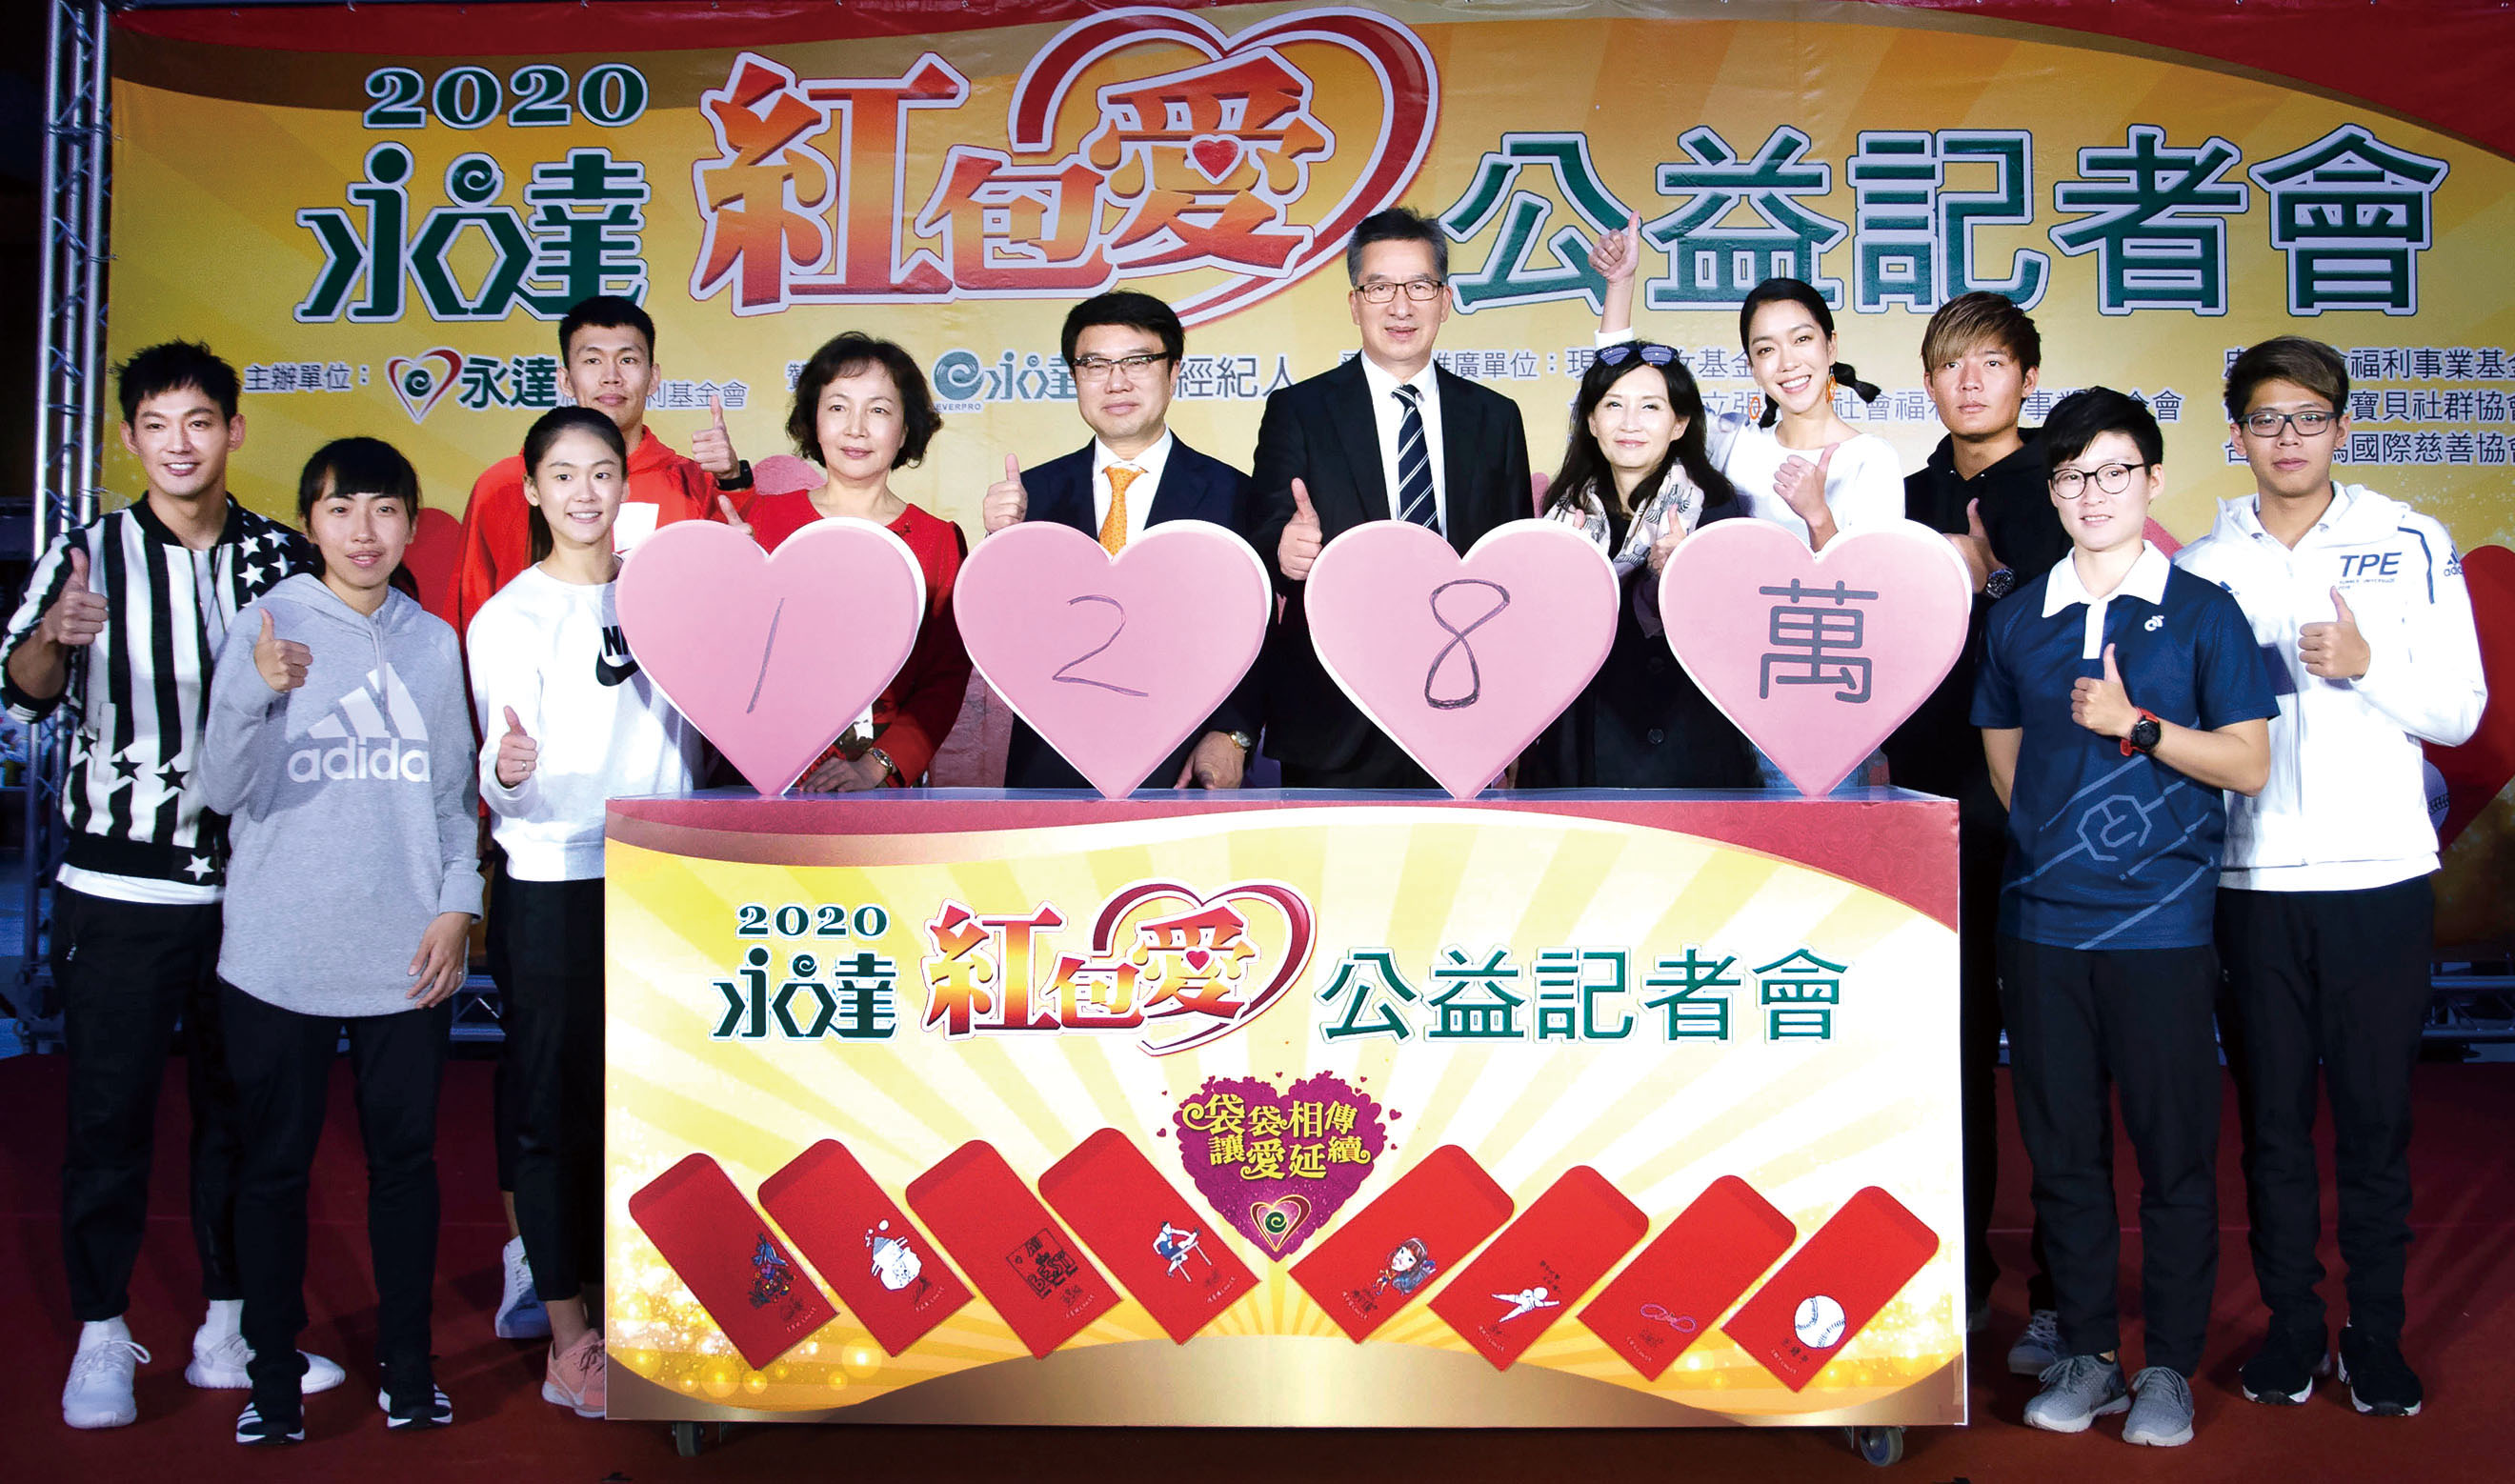 永達紅包愛記者會在吳文永董事長及8位愛心大使的推廣之下，首賣日圓滿成功金額達到128萬元。